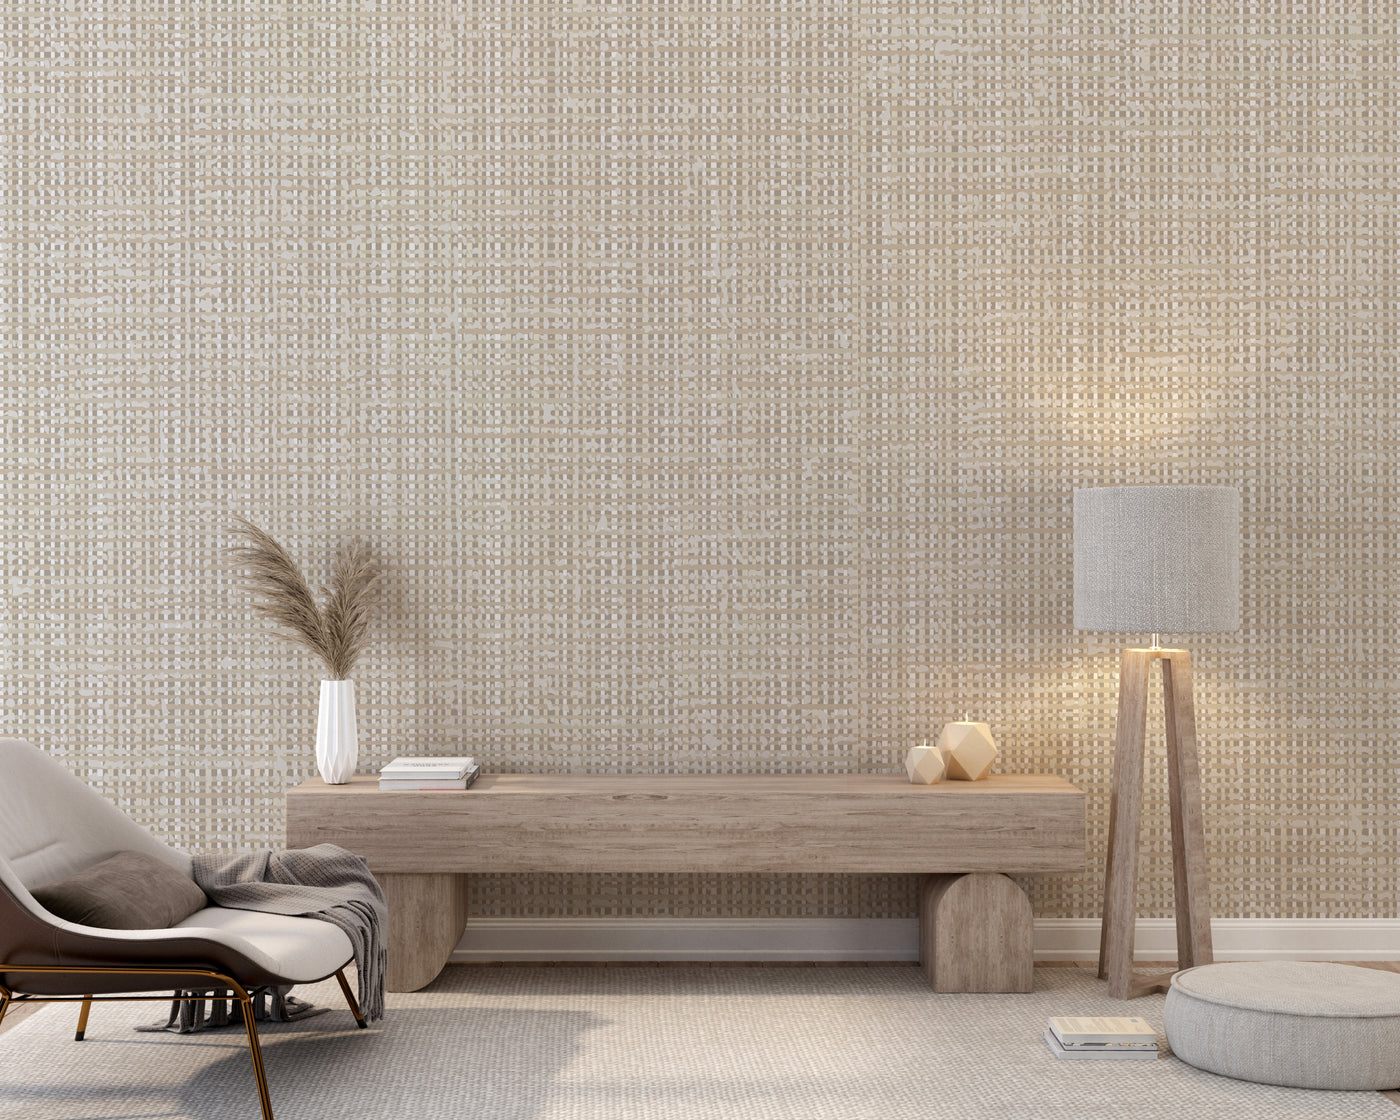 Wallpaper -  Woven Grass Texture